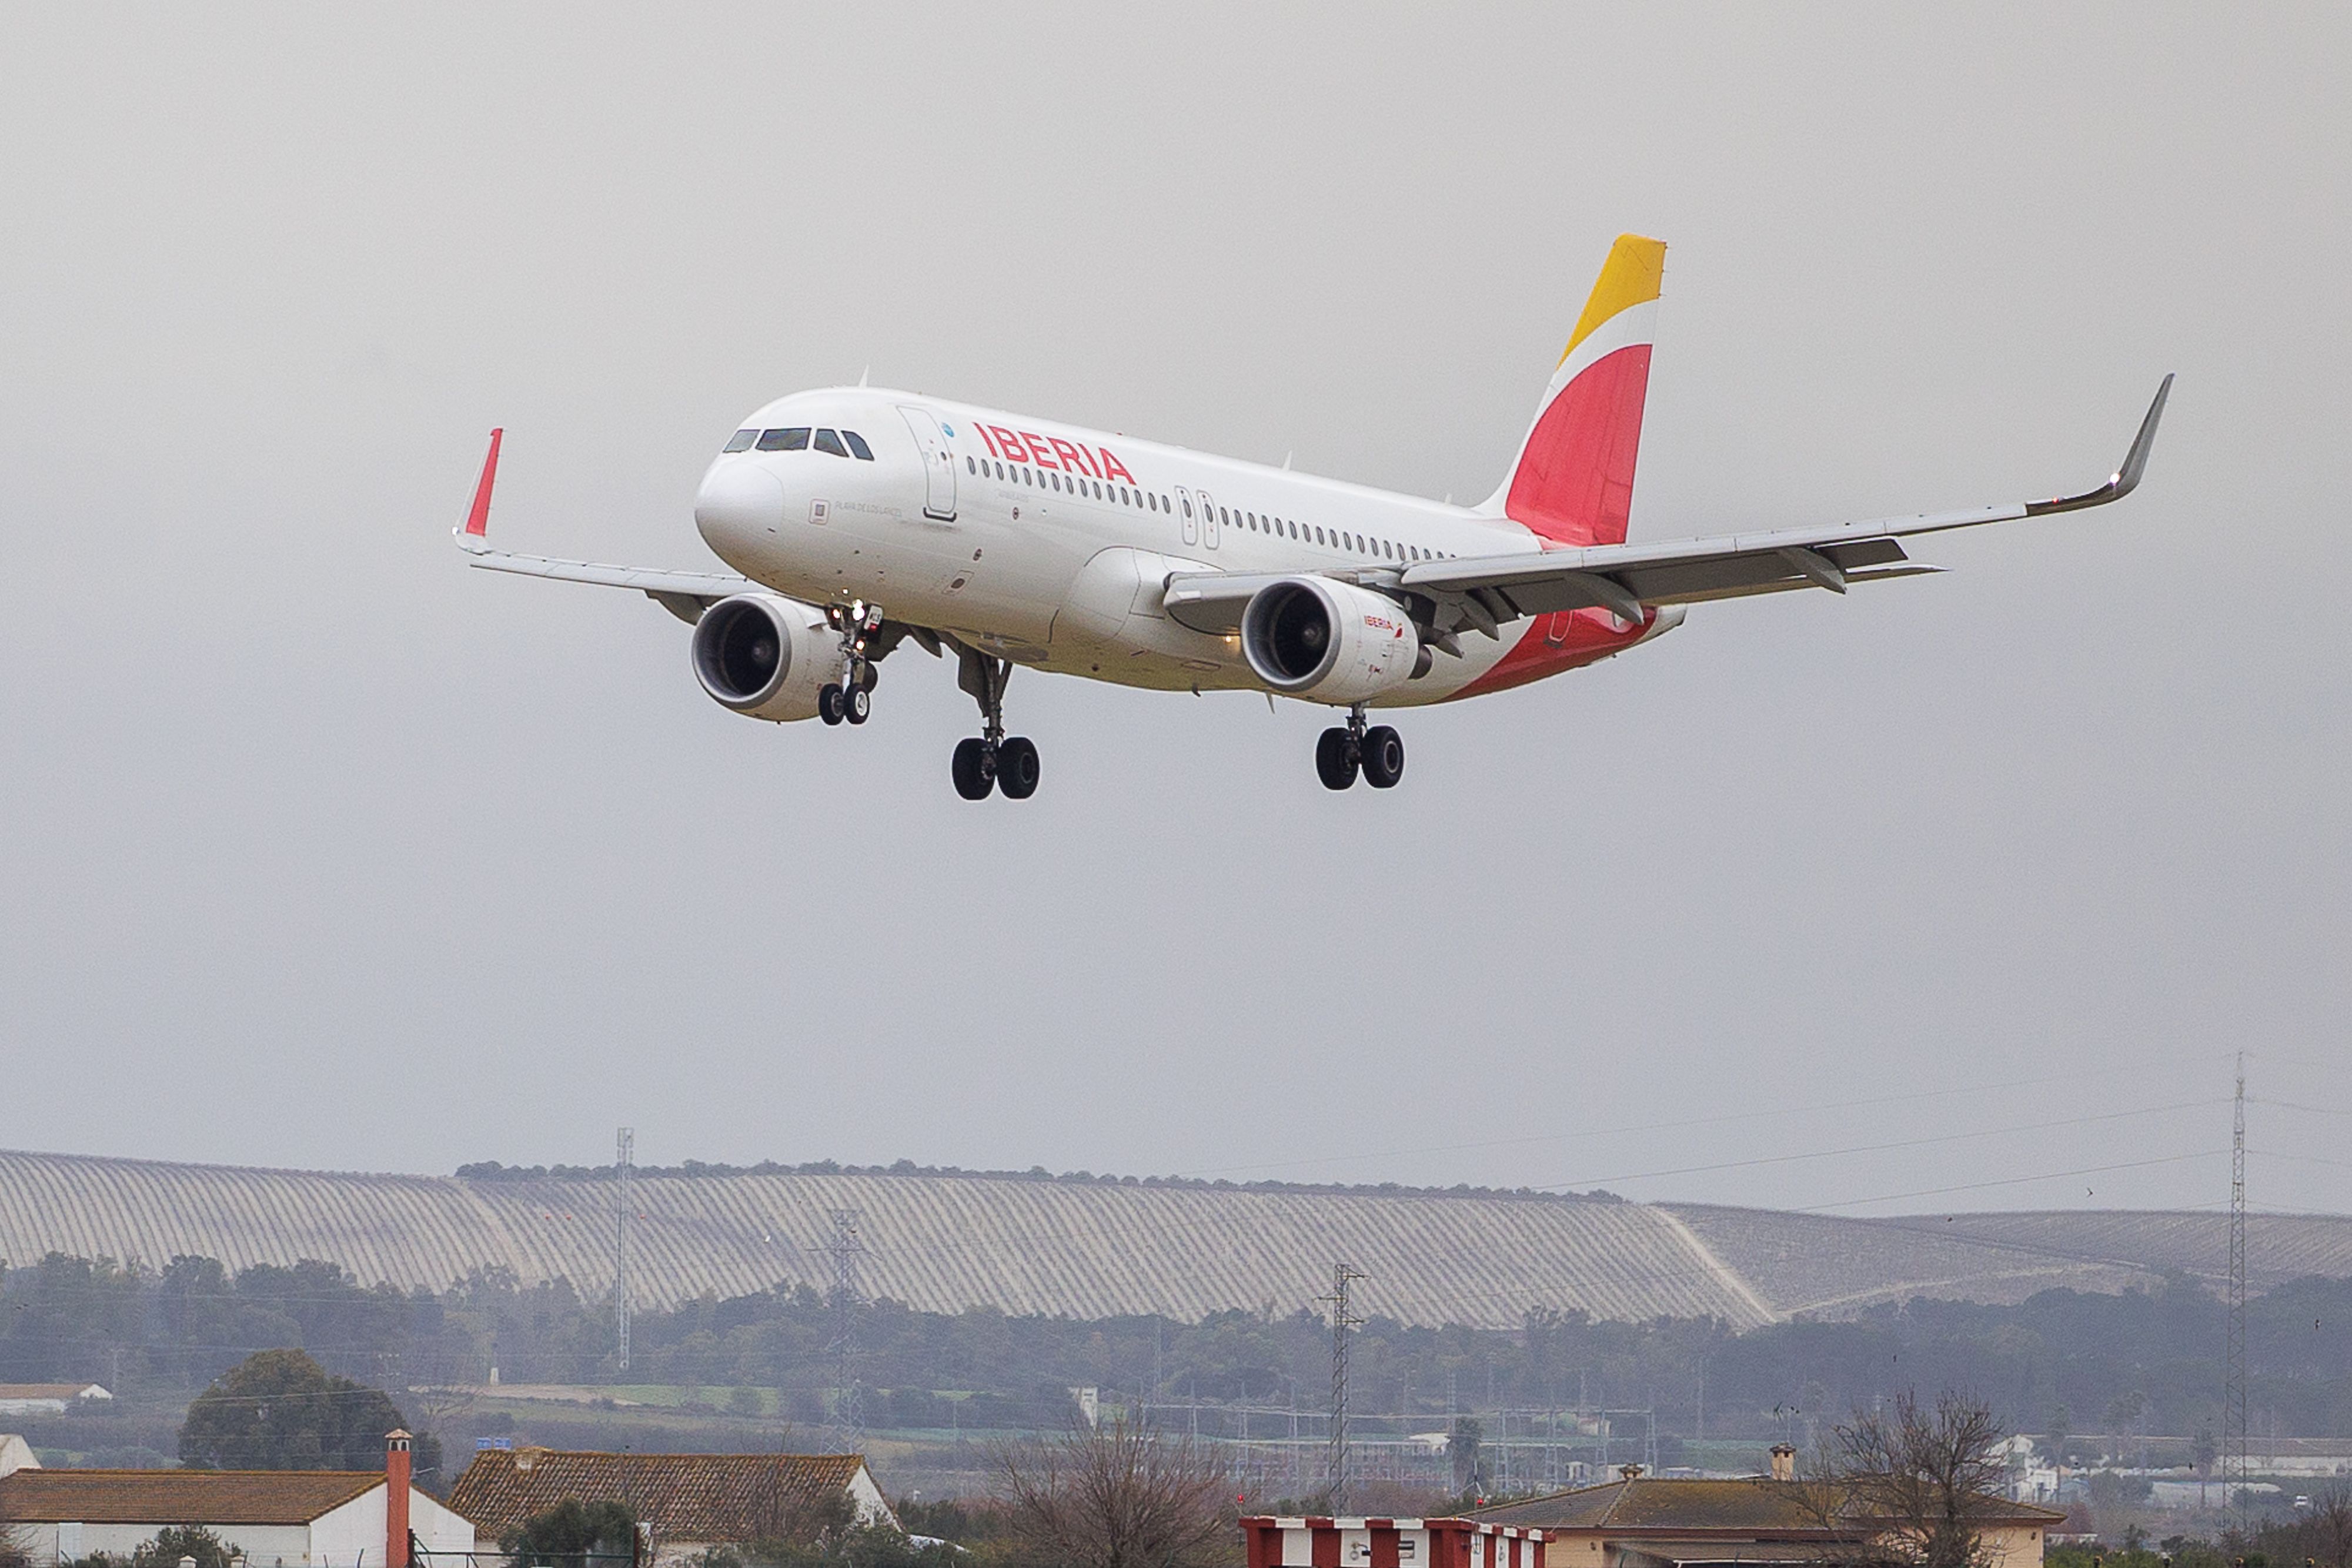 Un avión de Iberia, tras un vuelo, tomando tierra en el Aeropuerto de Jerez.